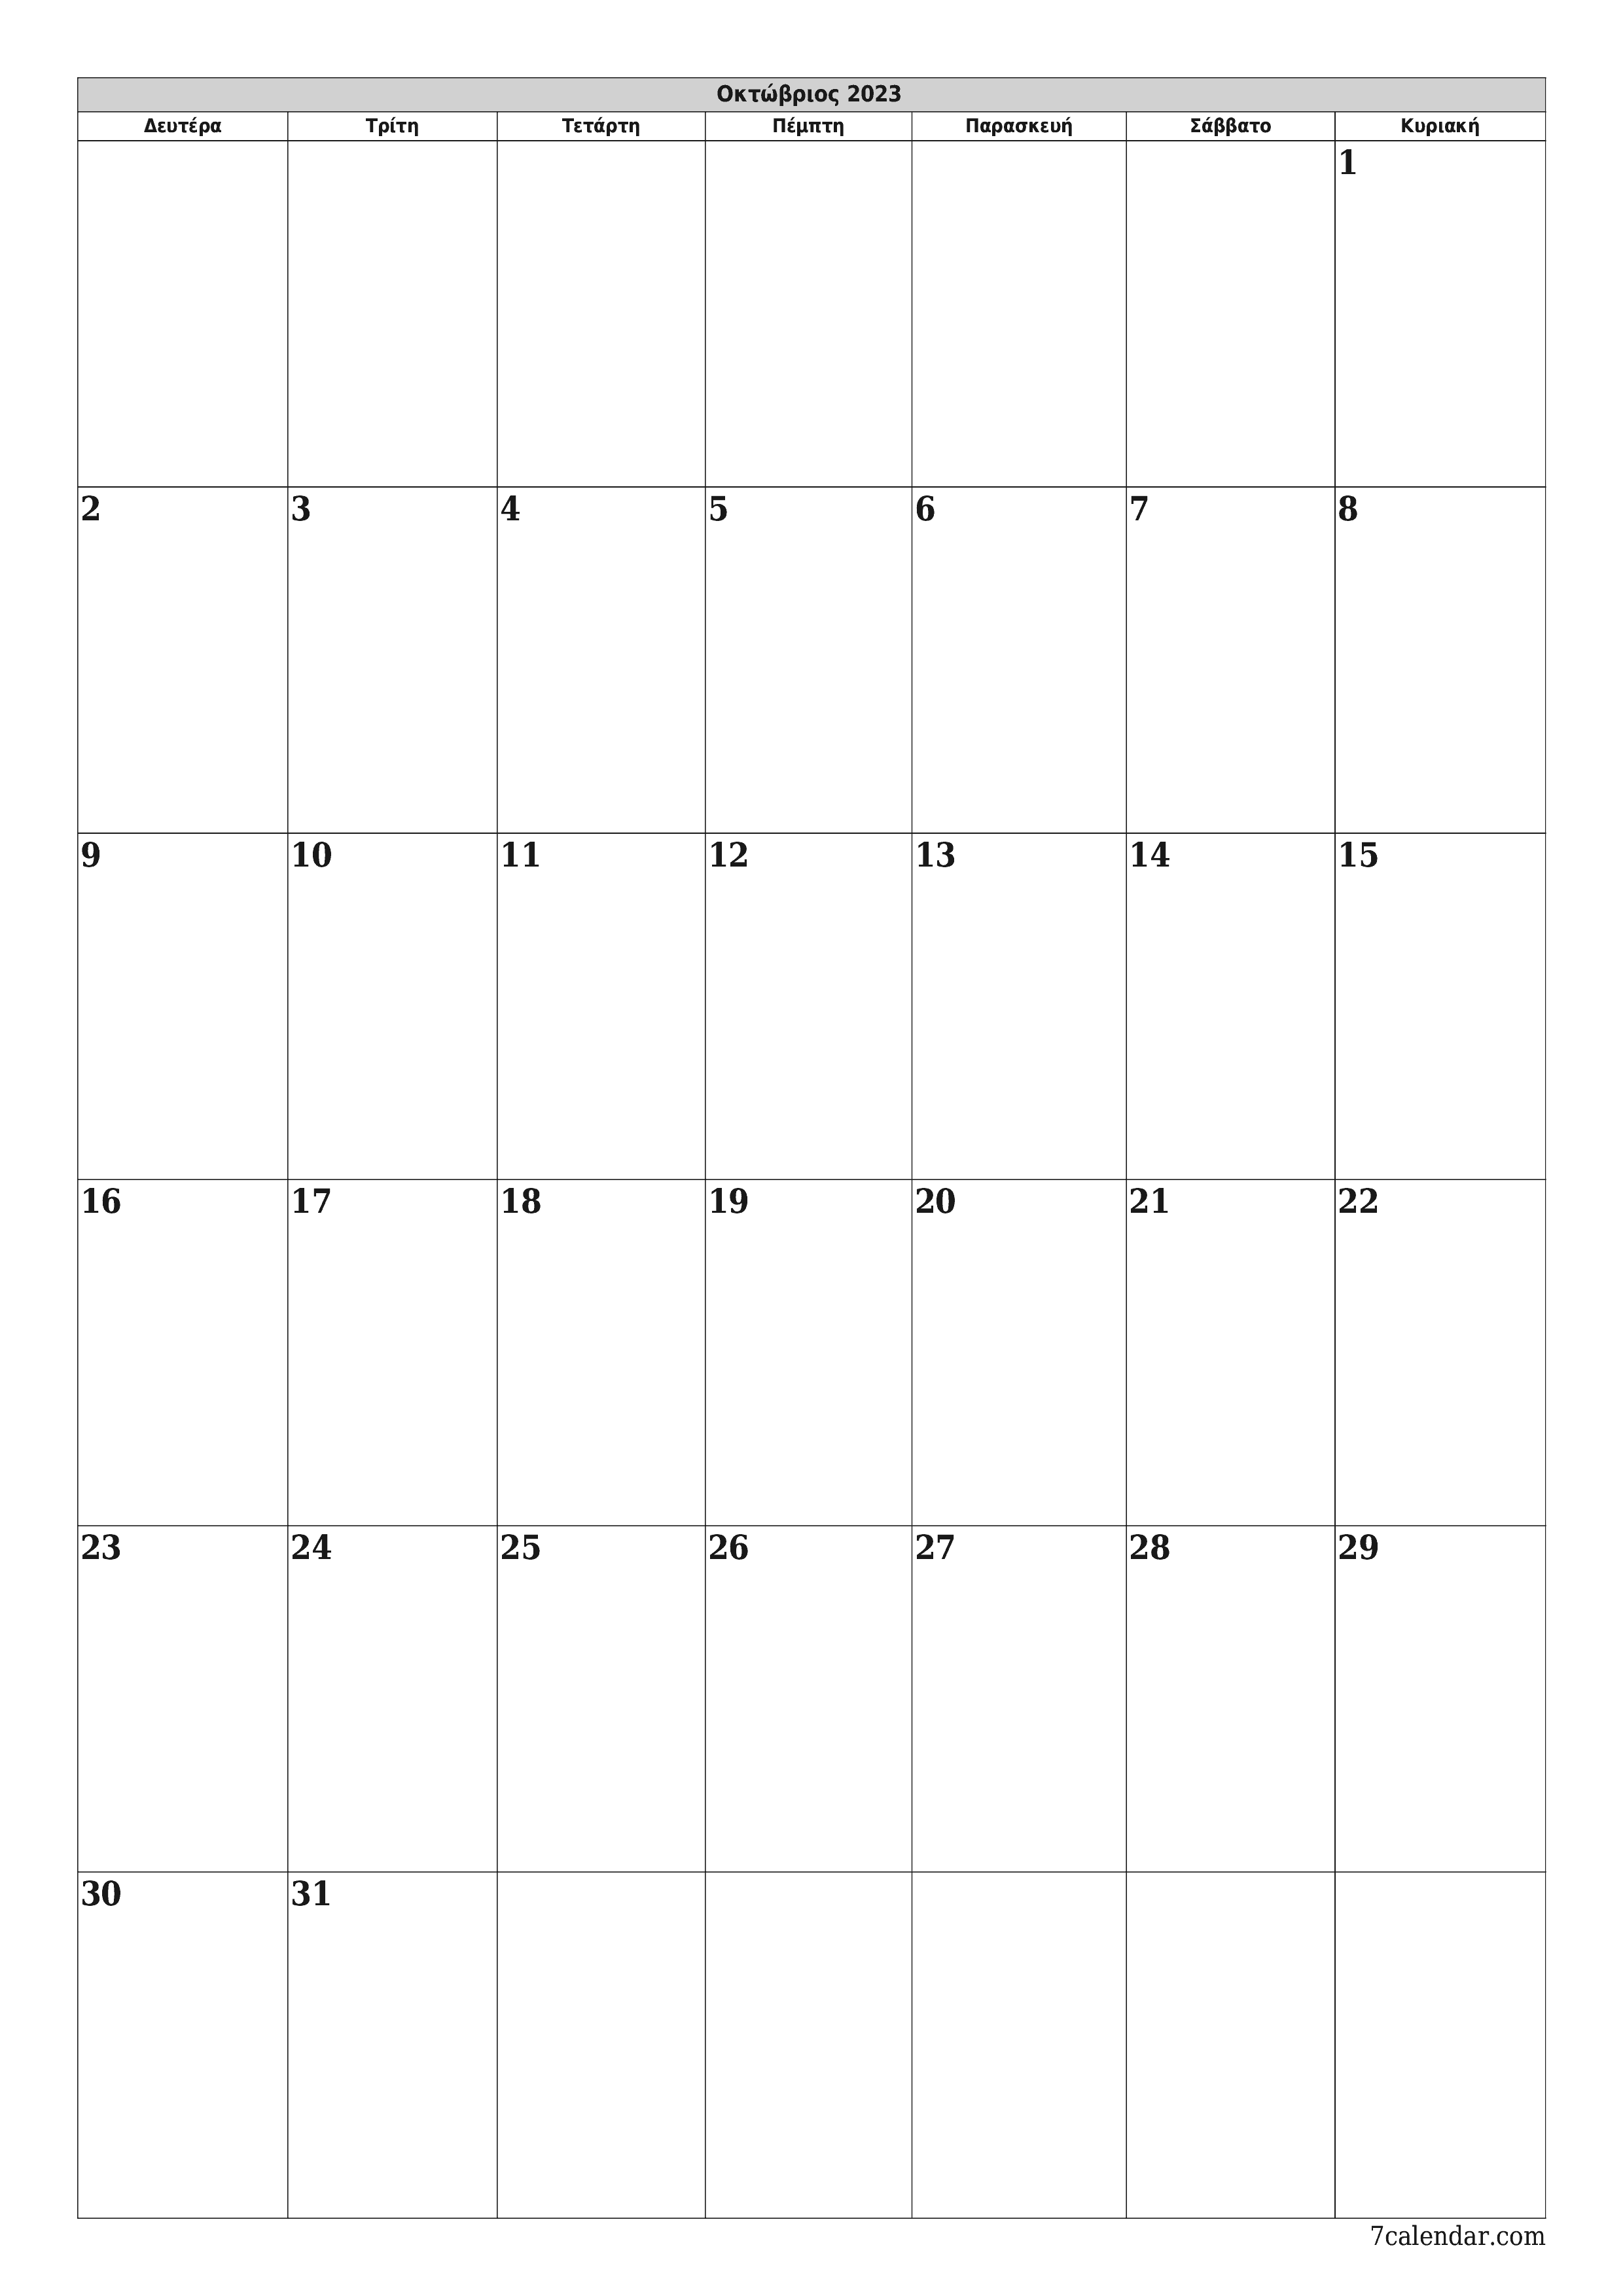 εκτυπώσιμο ημερολόγιο ημερολόγιο τοίχου πρότυπο ημερολογίου δωρεάν ημερολόγιοκατακόρυφος Μηνιαίο σχεδιαστής Ημερολόγιο Οκτώβριος (Οκτ) 2023